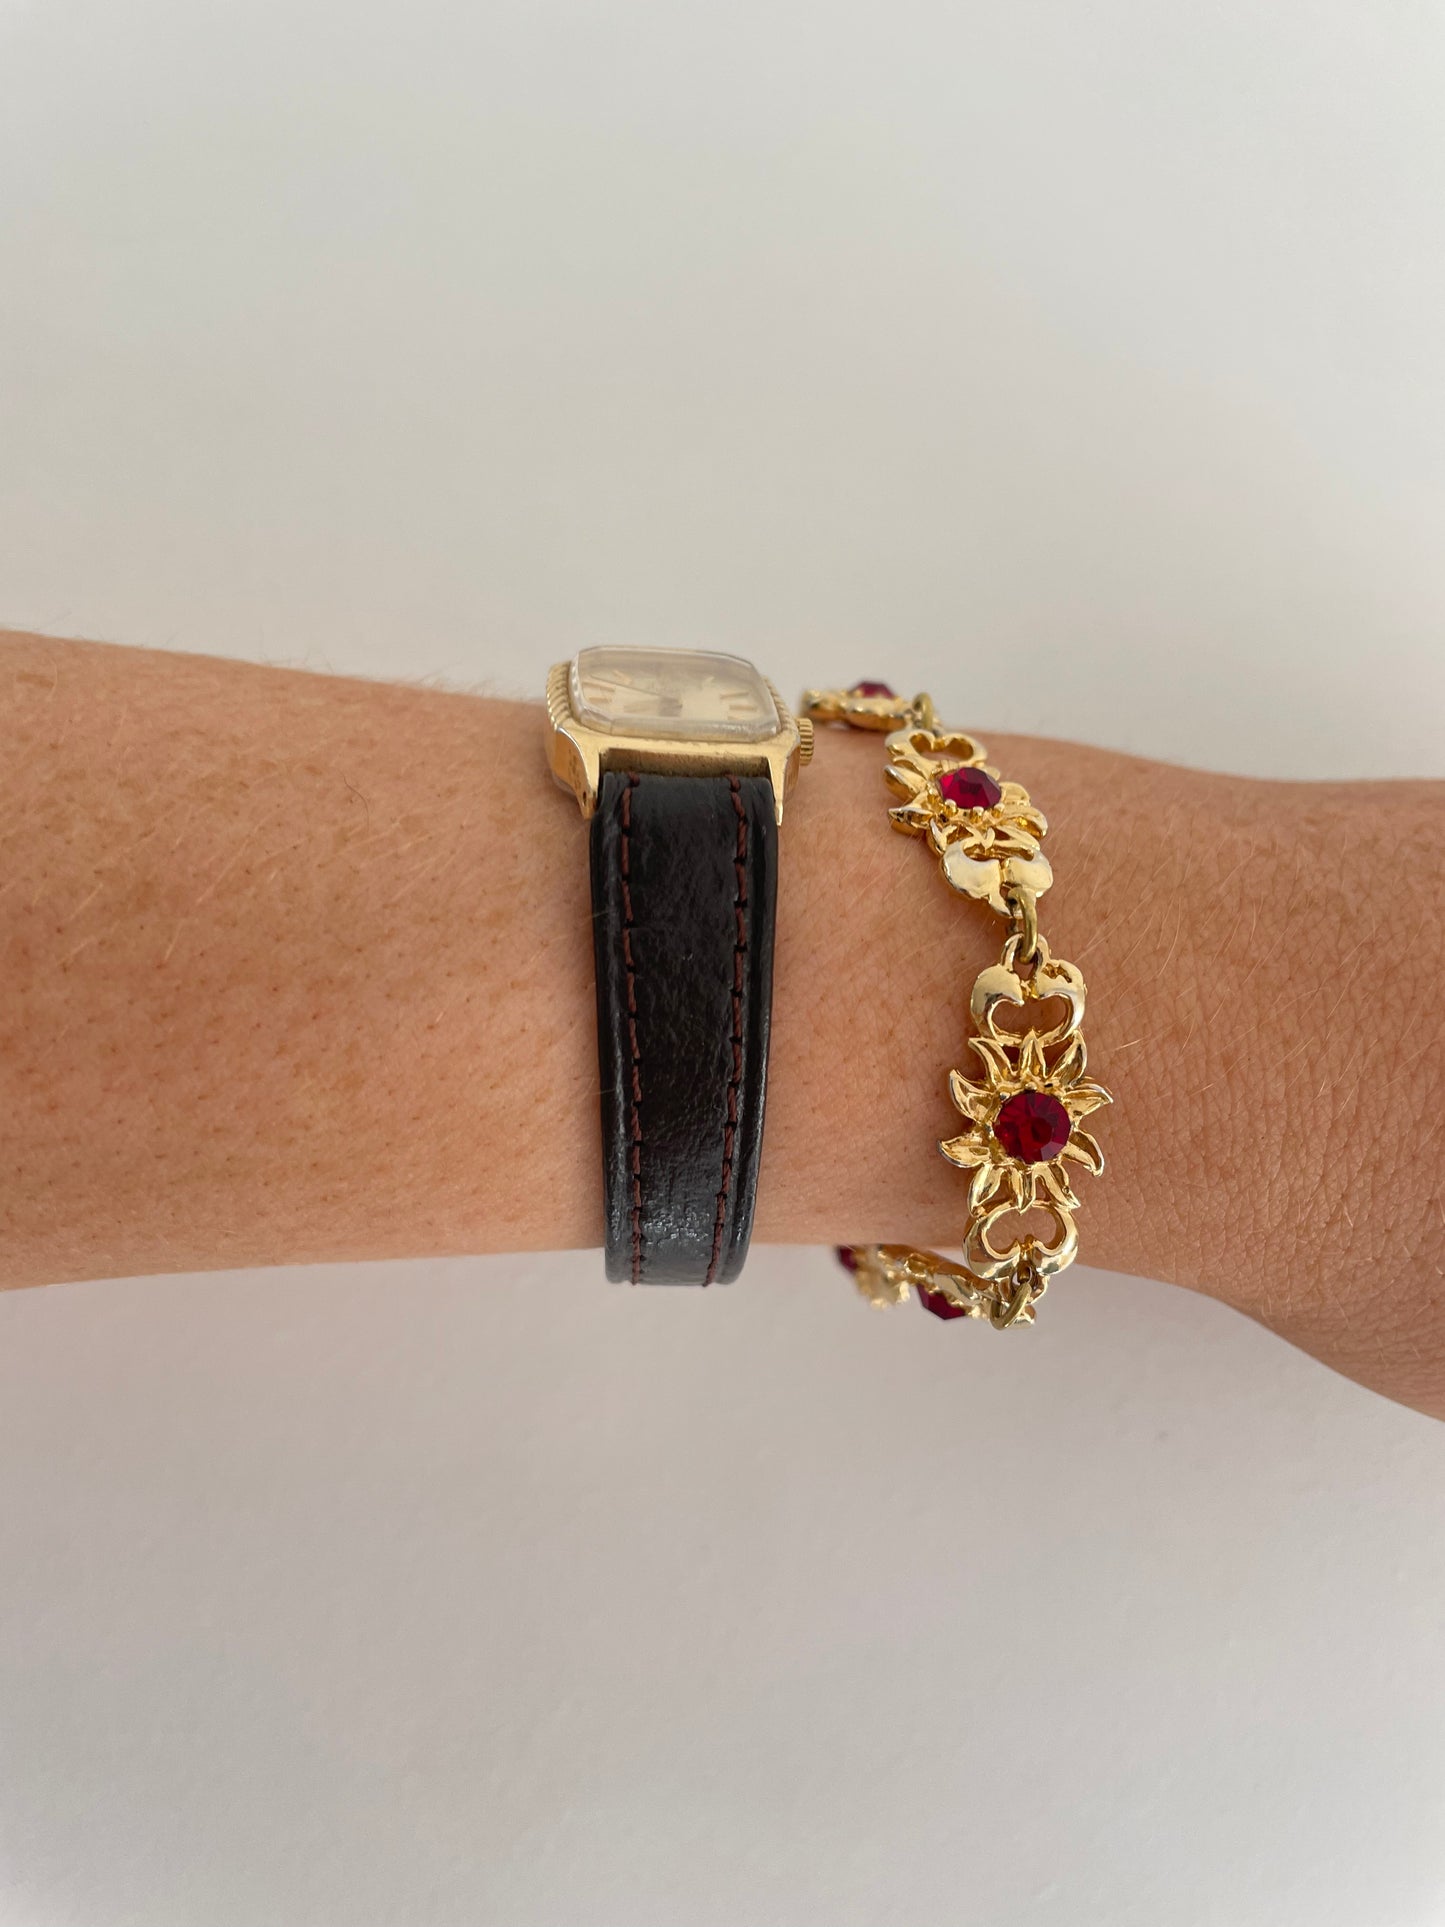 The Úna Watch & Bracelet